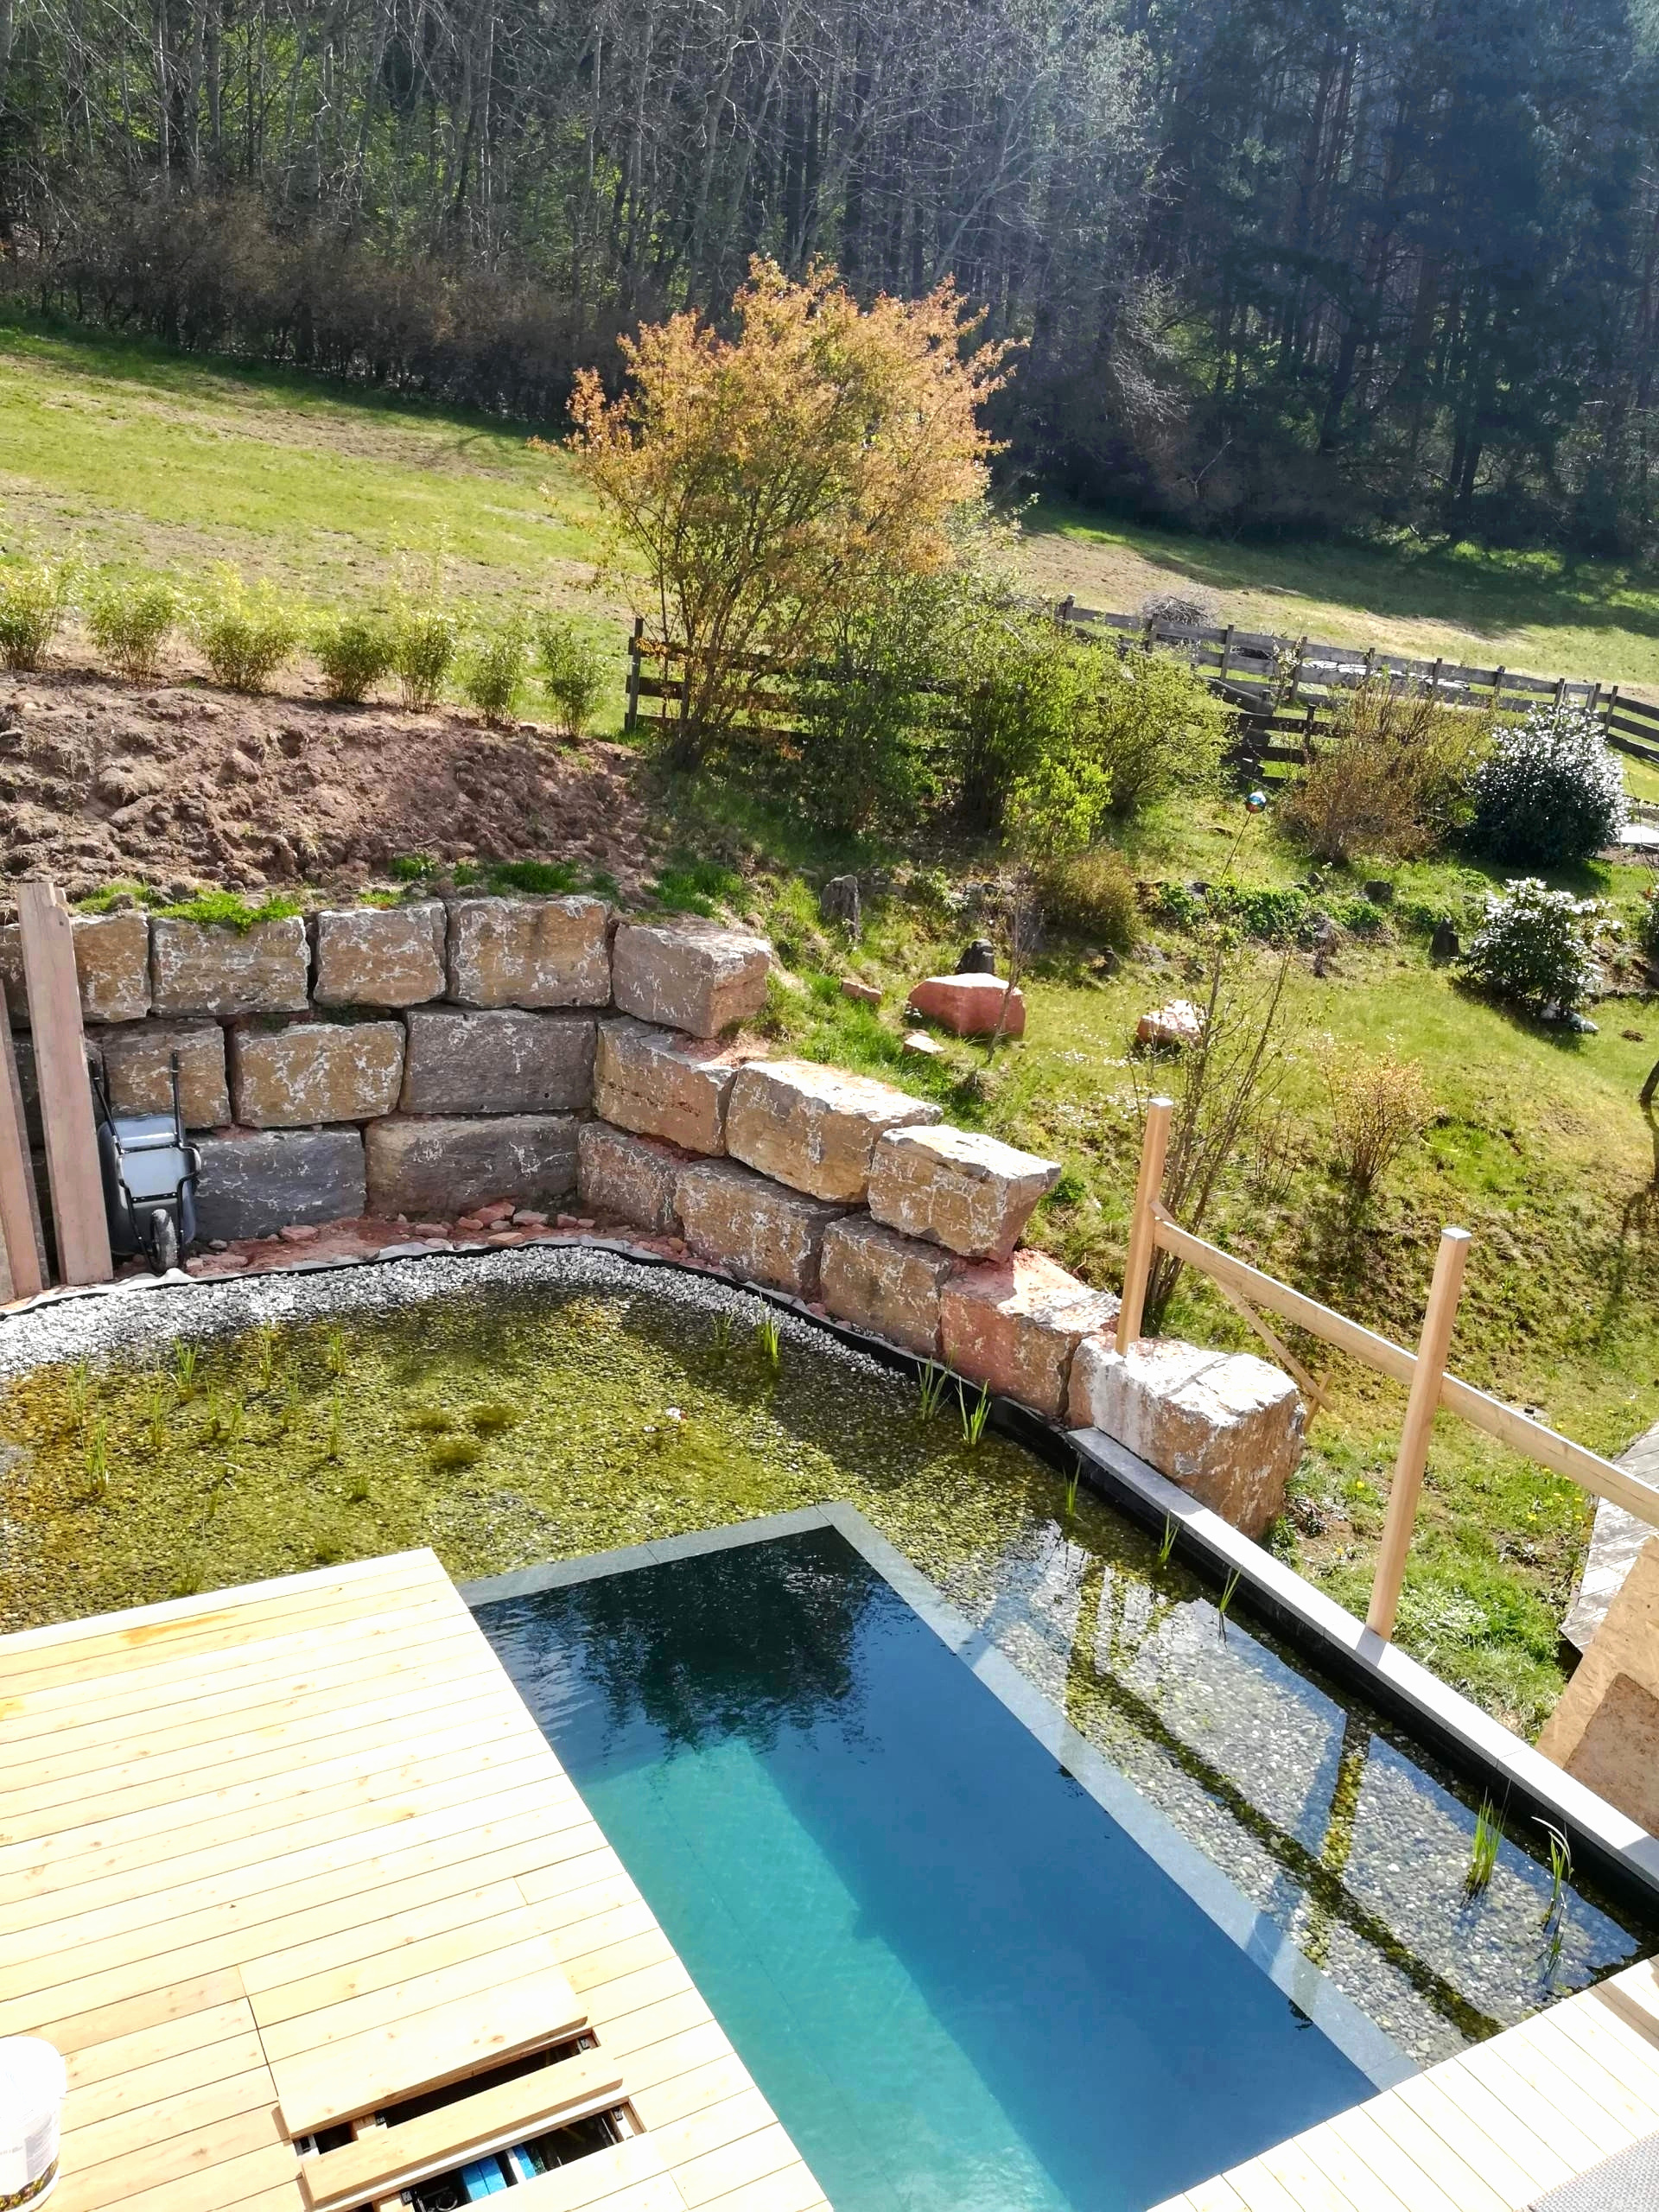 terrasse bois piscine hors sol nouveau impressionnant voir piscine hors sol dans terrasse bois piscine hors of terrasse bois piscine hors sol